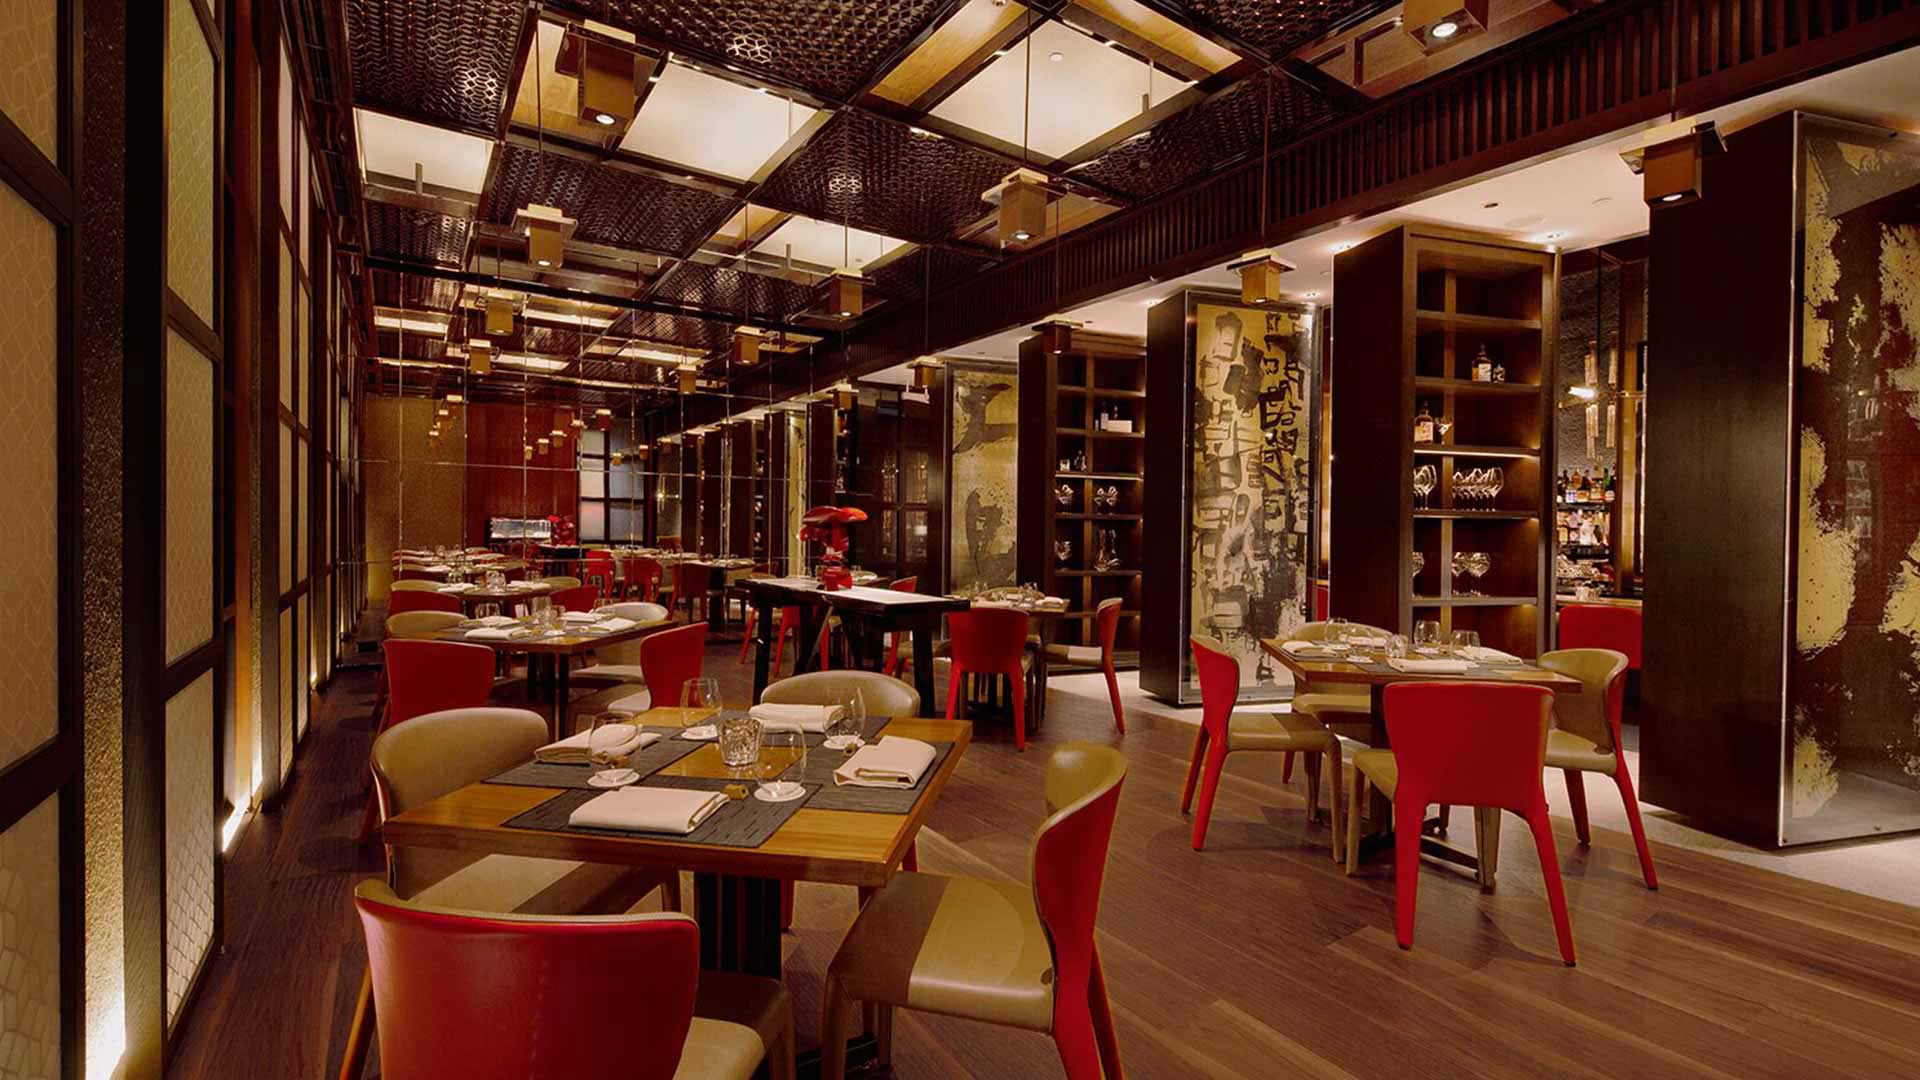 Aula bersantap utama di Waku Ghin, restoran berbintang Michelin di Singapura untuk mengadakan acara dan pertemuan privat